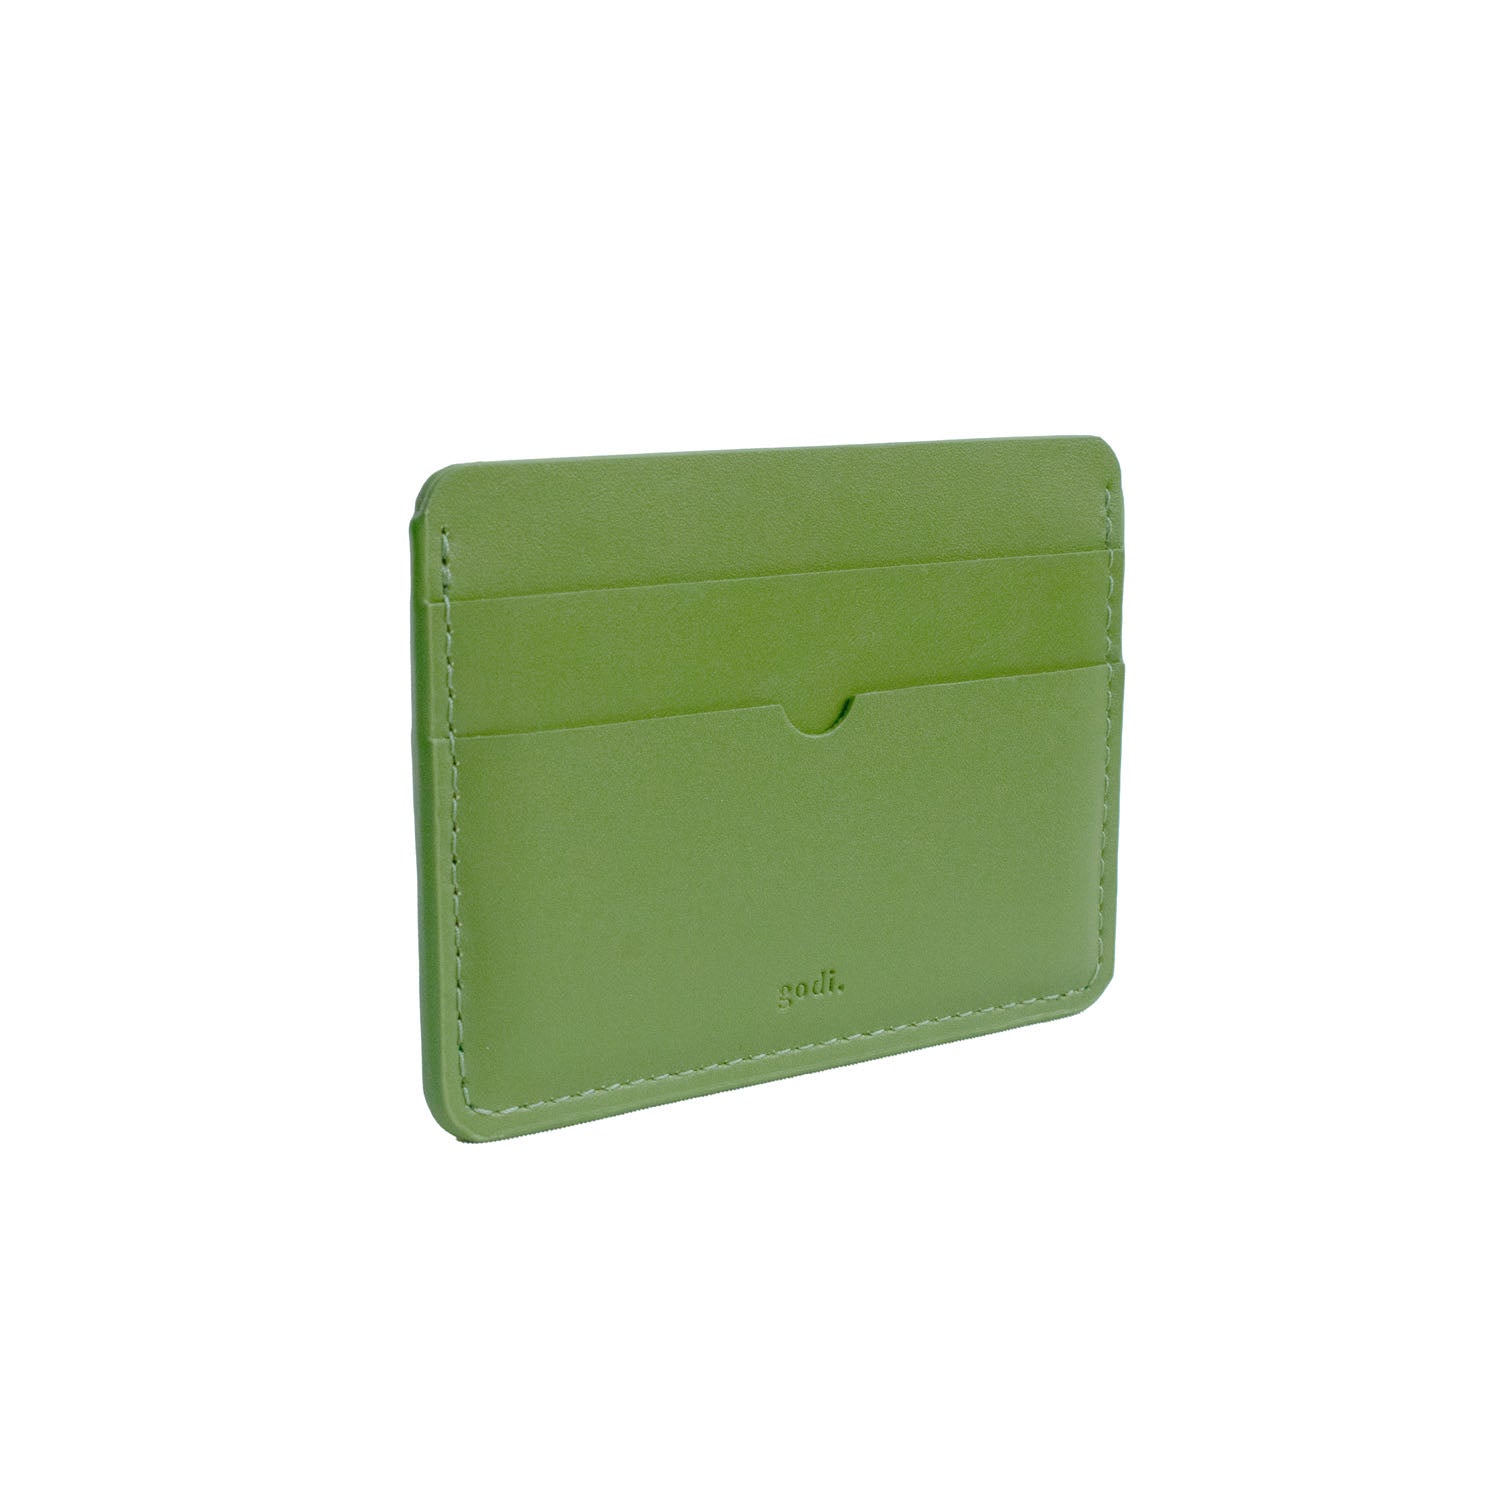 Card Case in Fern Green